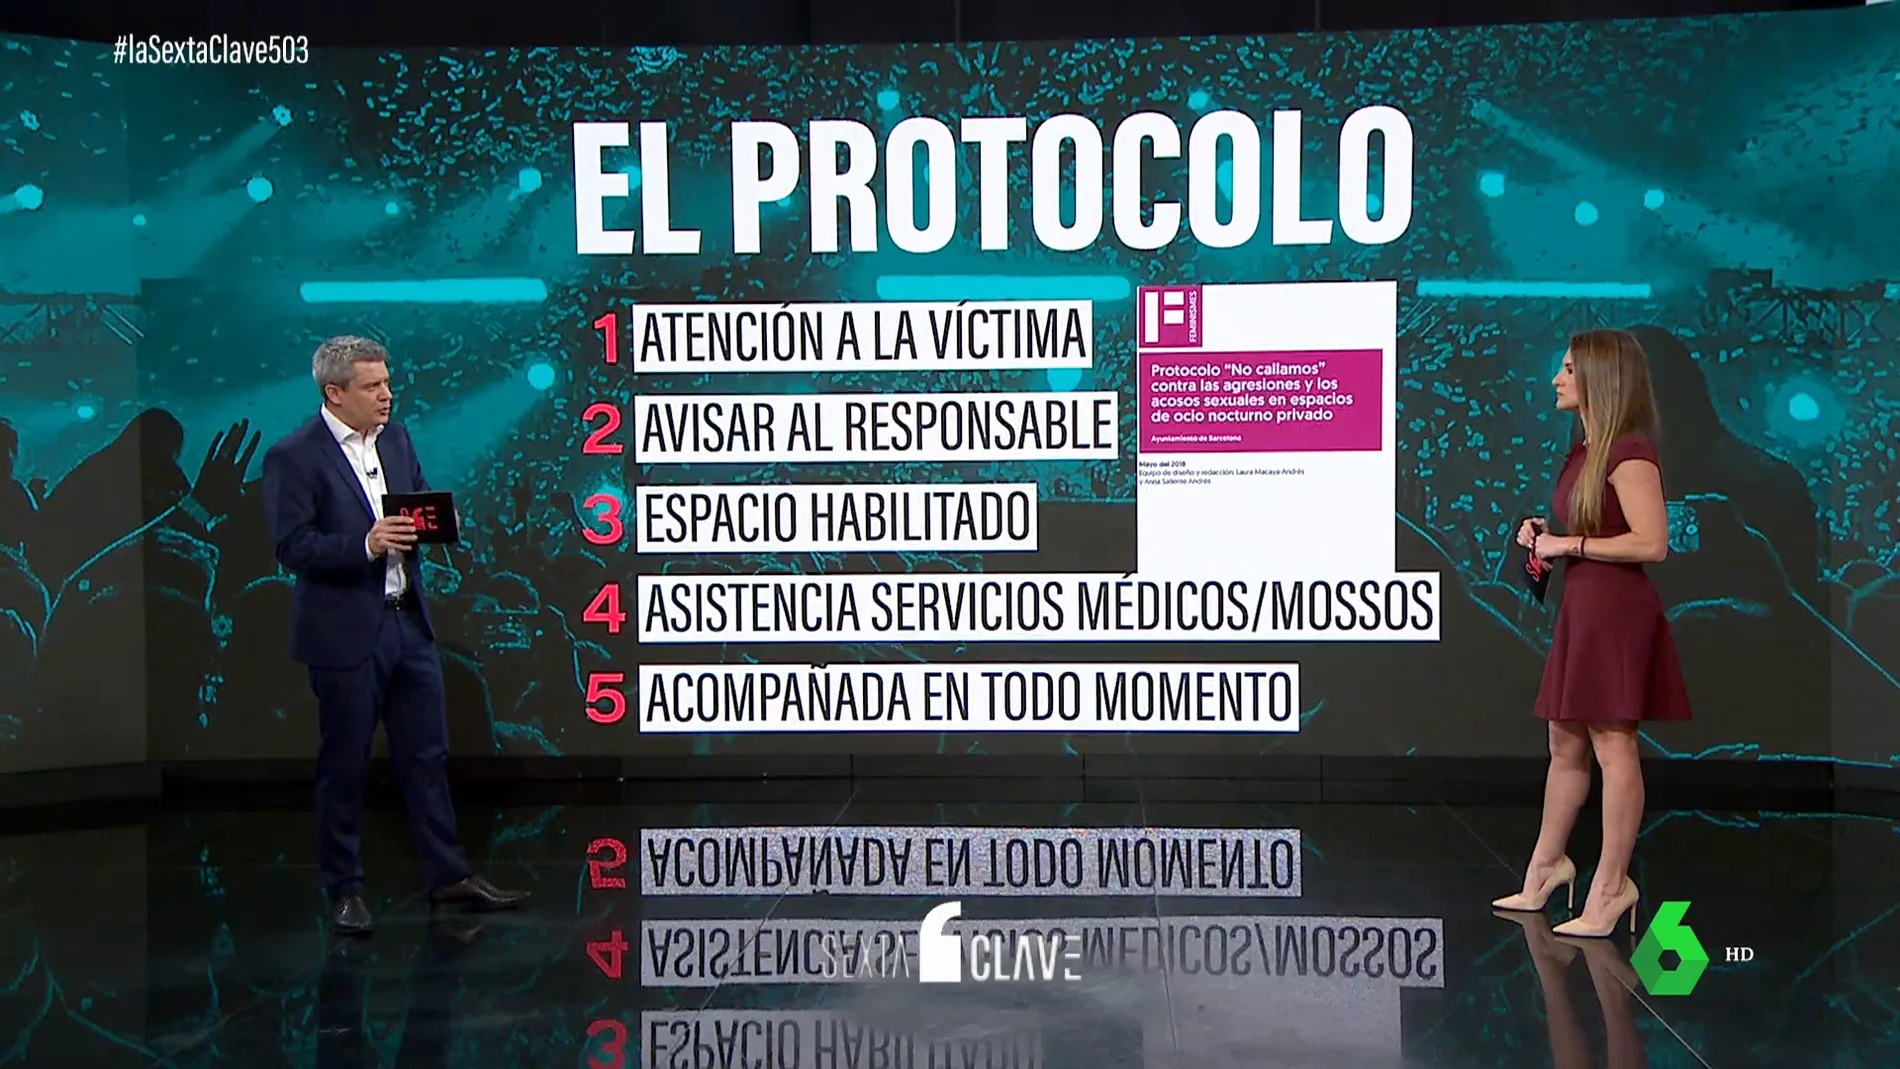 Estos son los pasos del protocolo que activó la discoteca tras la presunta agresión sexual de Dani Alves